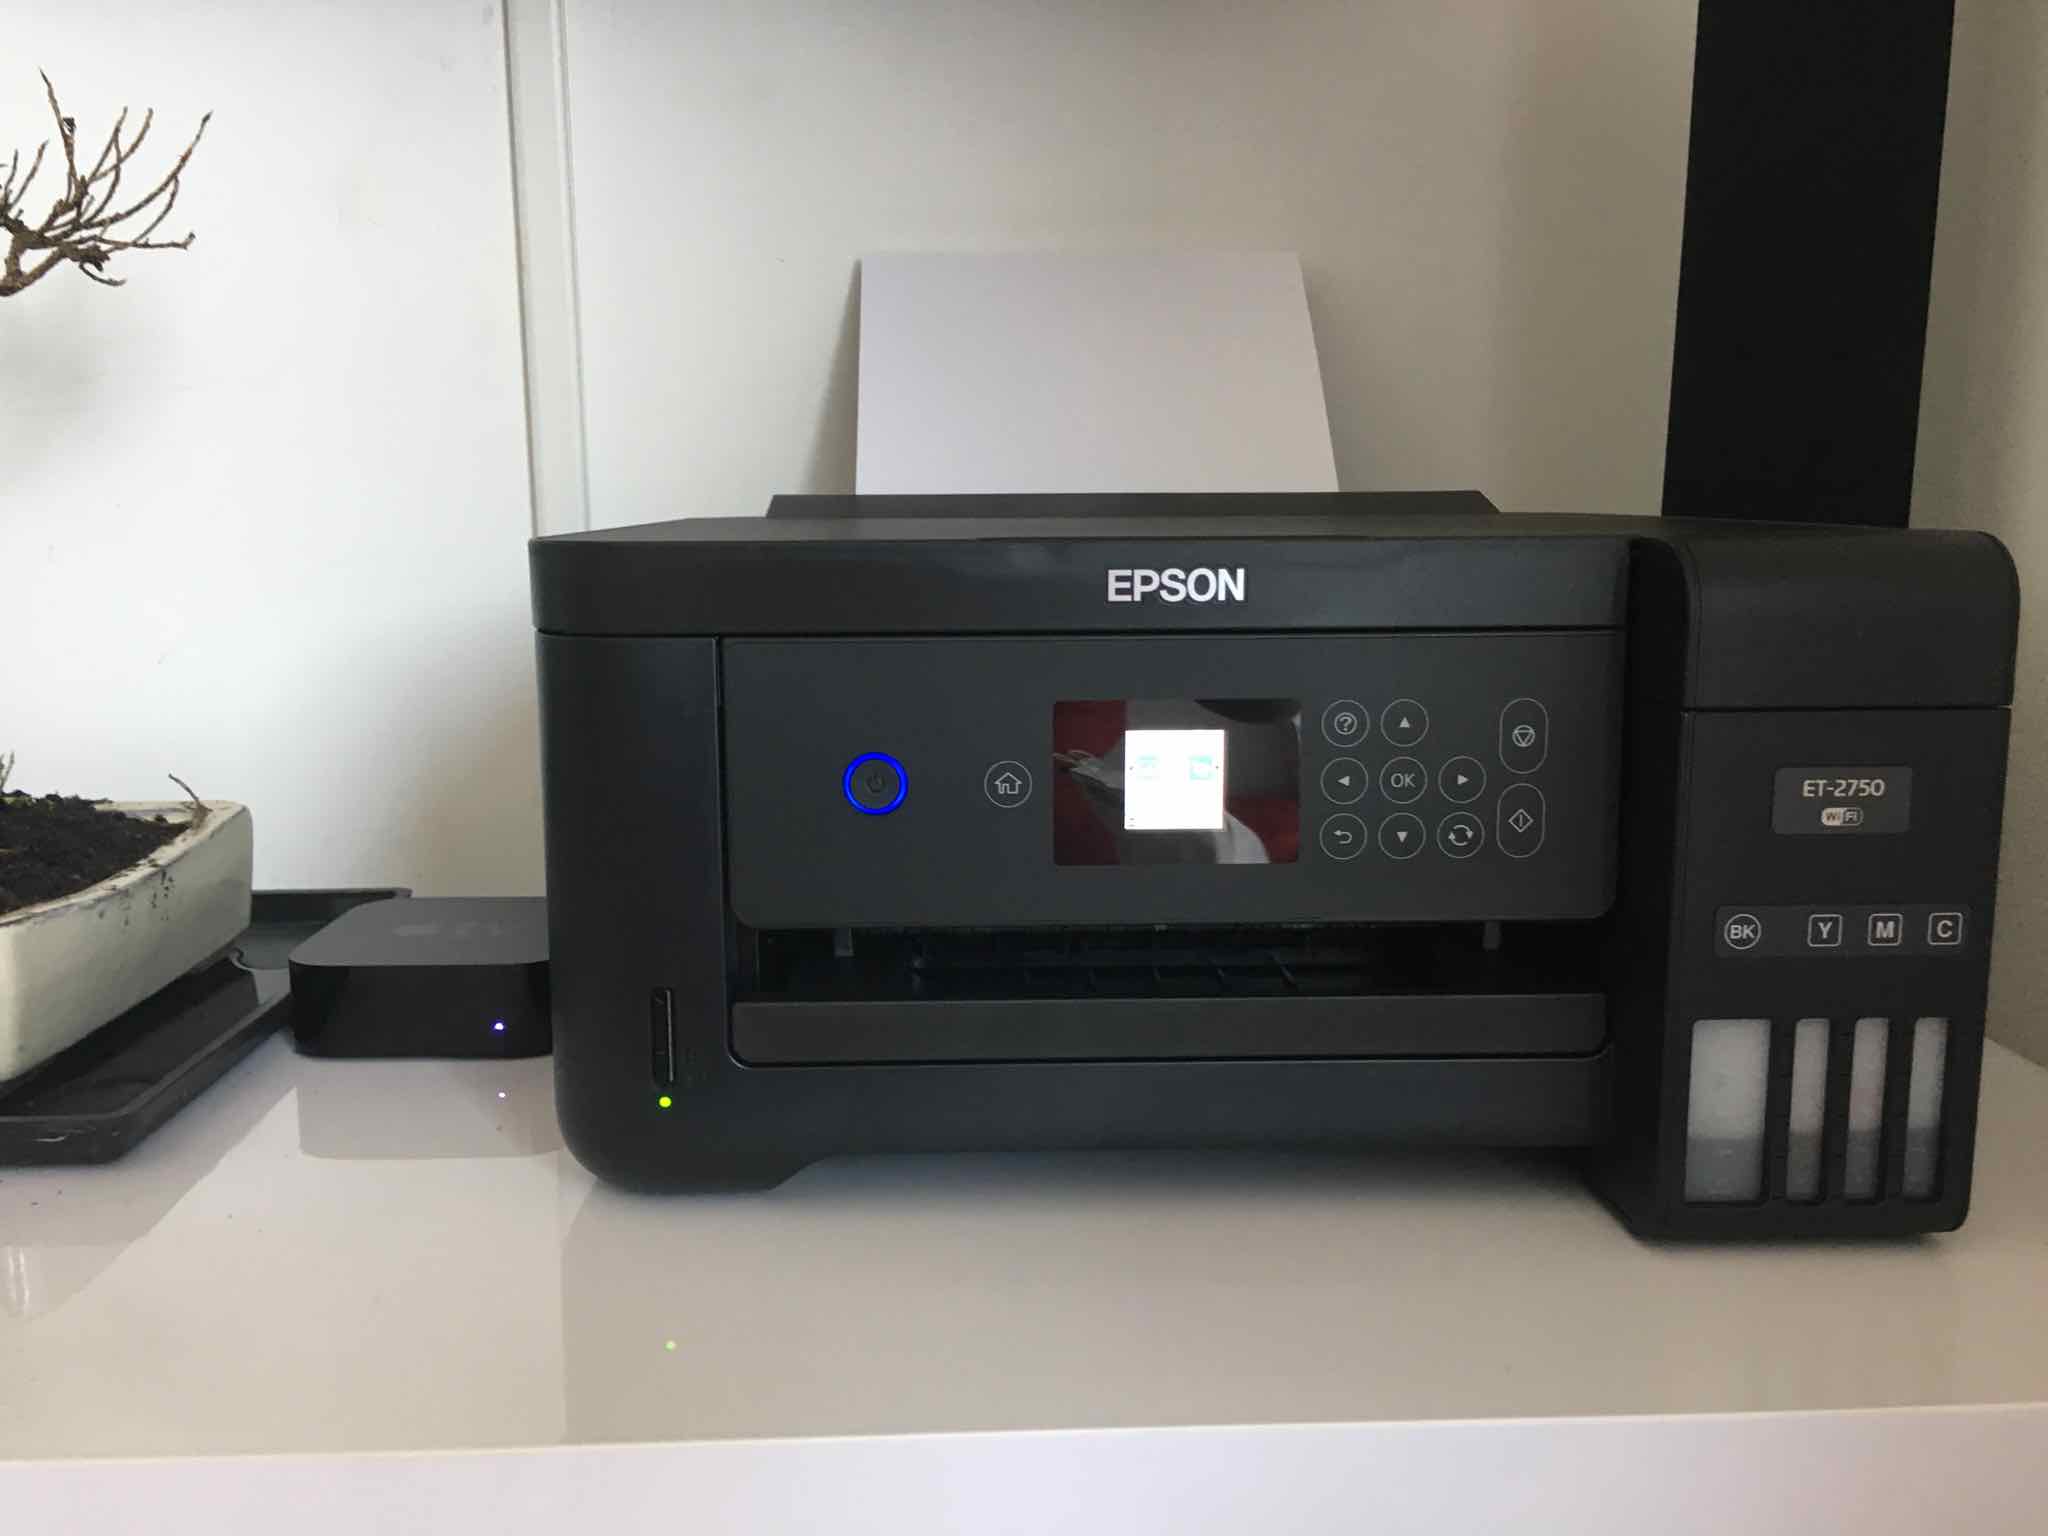 Déballage de l’imprimante EPSON ET-2750, Imprimante sans cartouches.